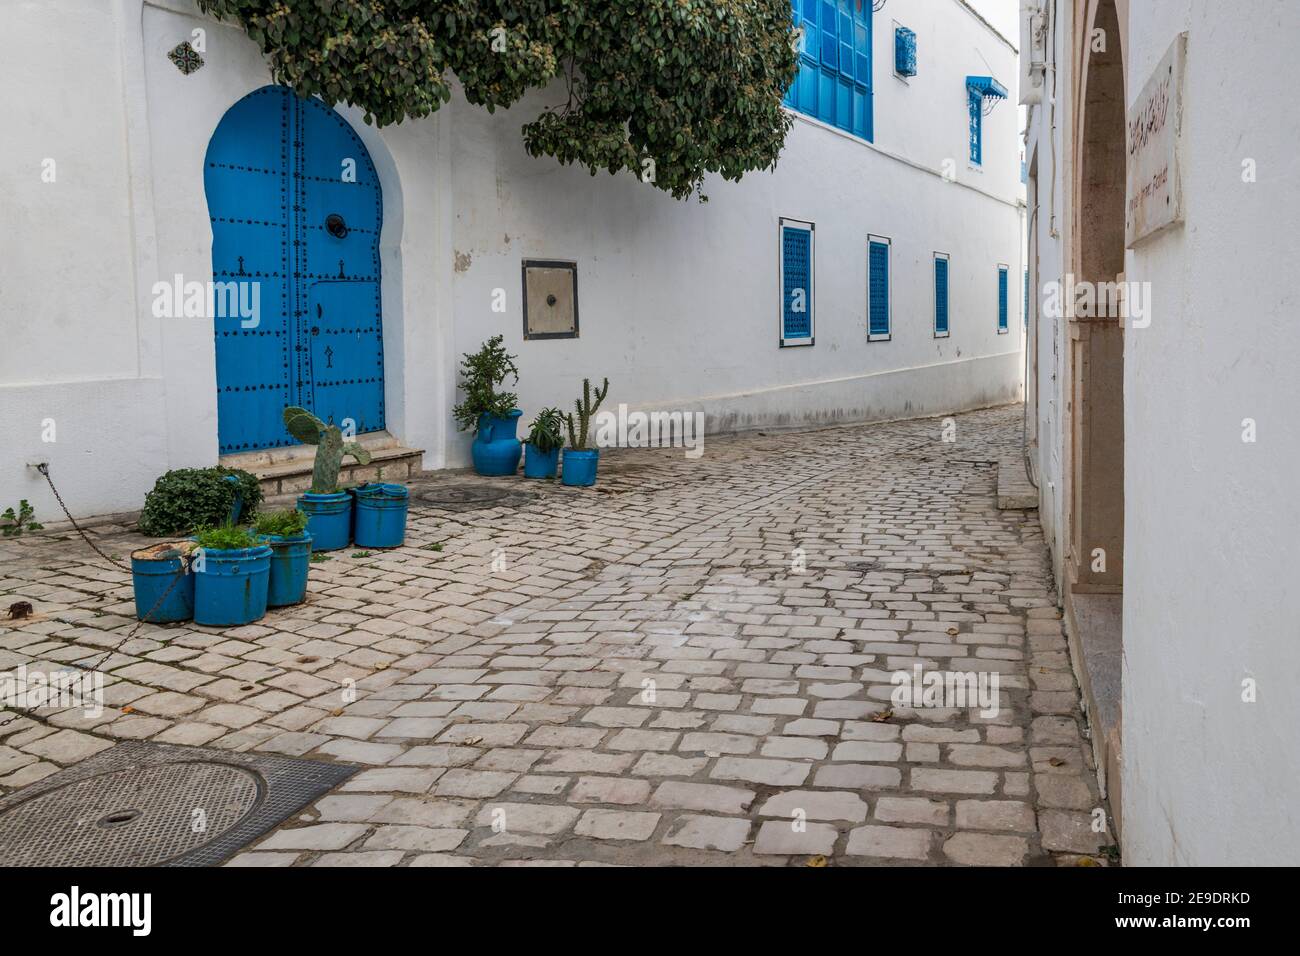 Les rues pavées de Sidi Bou ont dit. L'attraction touristique bleue et blanche surplombant la mer Méditerranée. Tunisie, Afrique. Banque D'Images